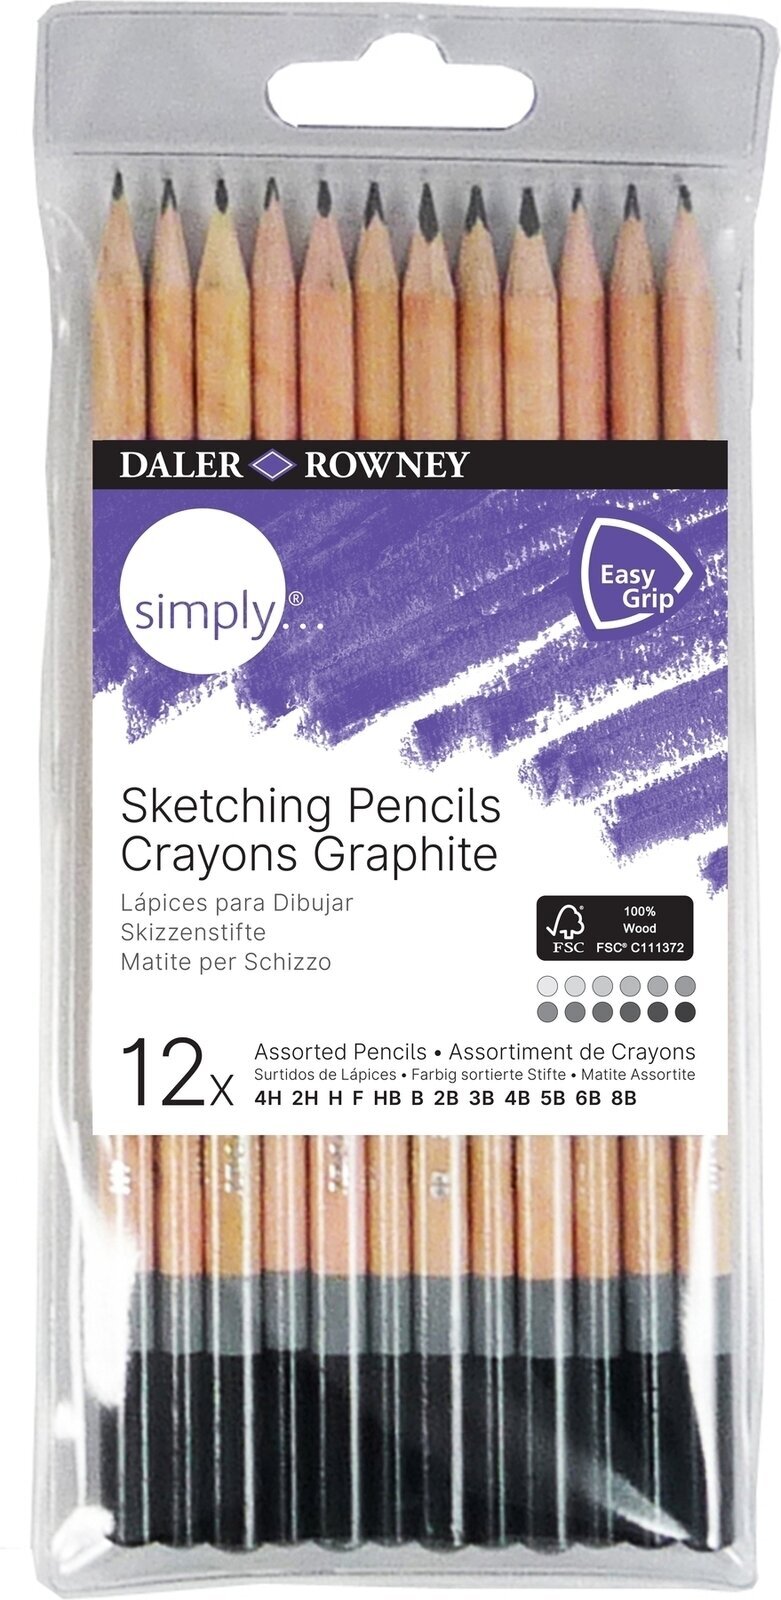 Grafitblyant Daler Rowney Simply Sketching Pencils Kunstnerblyantsæt 12 stk.